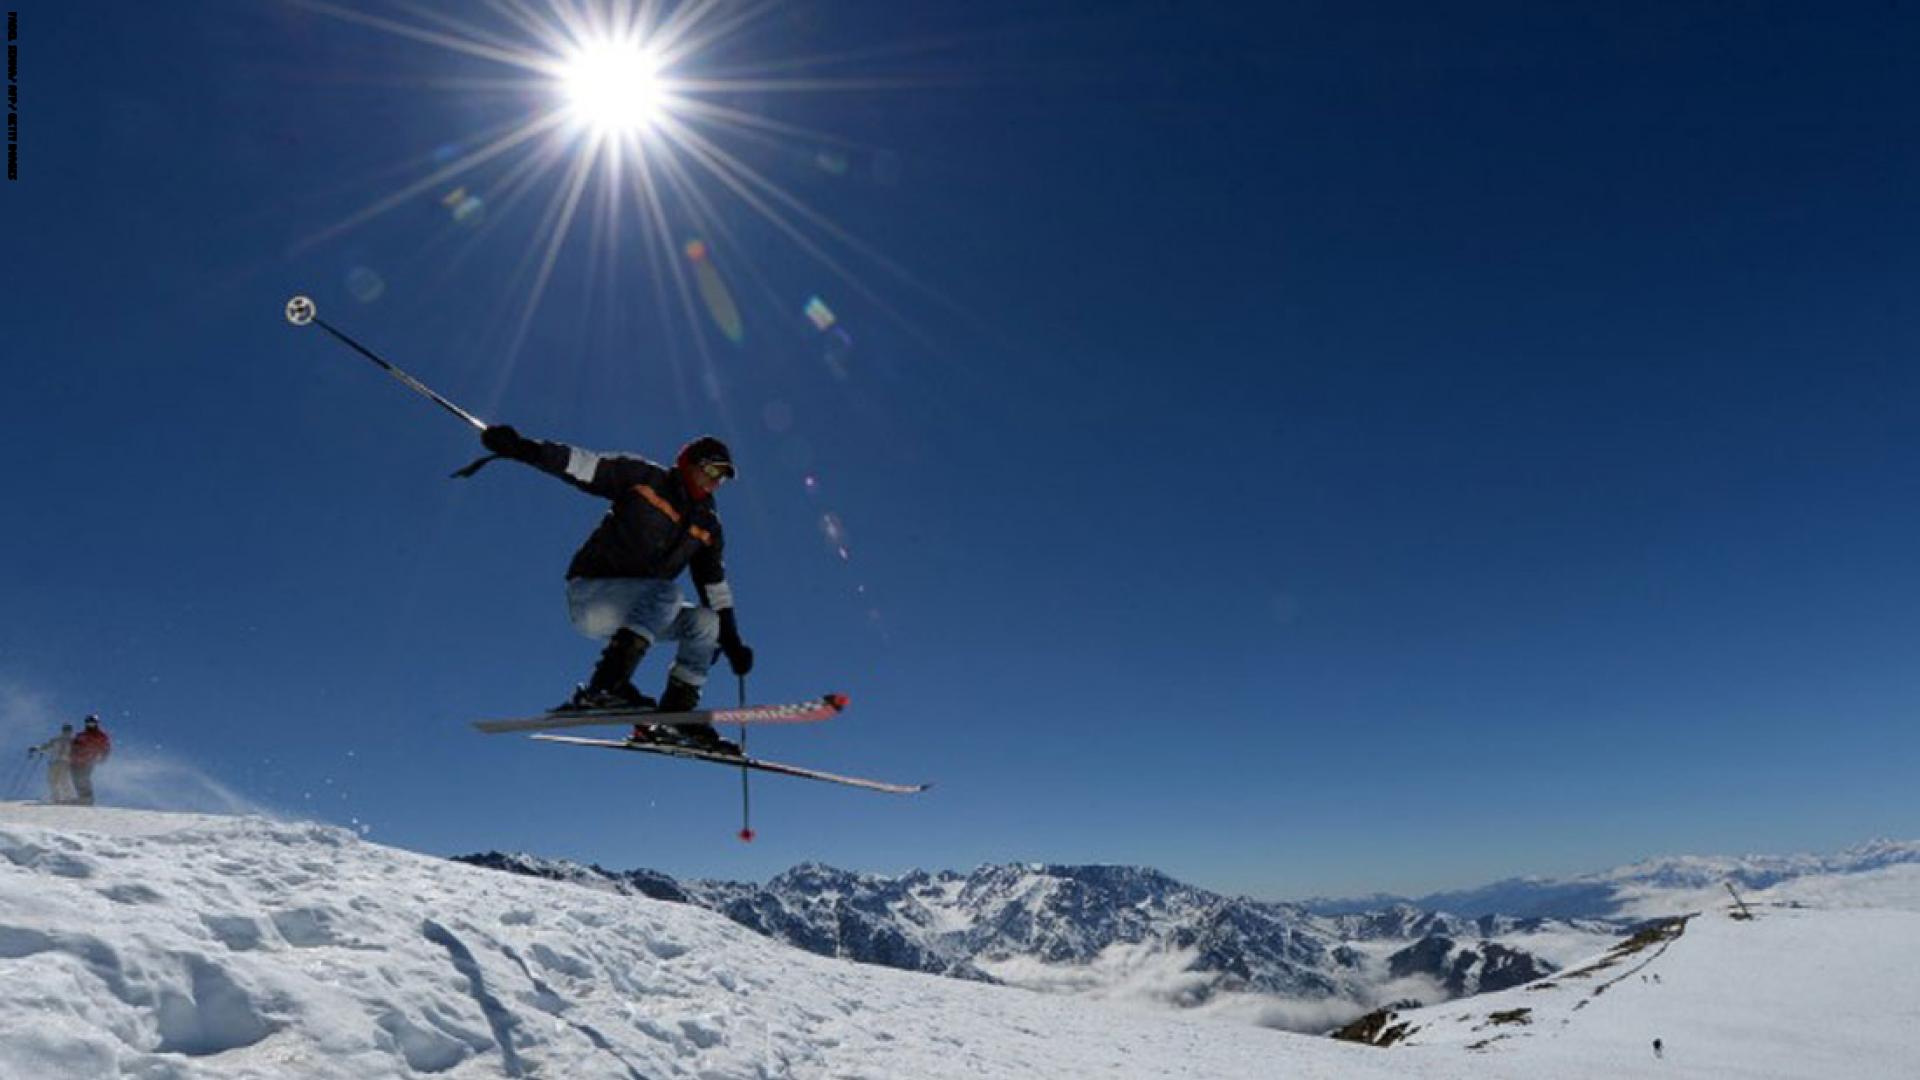 يمنح الثلج فرصة لمحبي التزلج للتمتع بفصل الشتاء